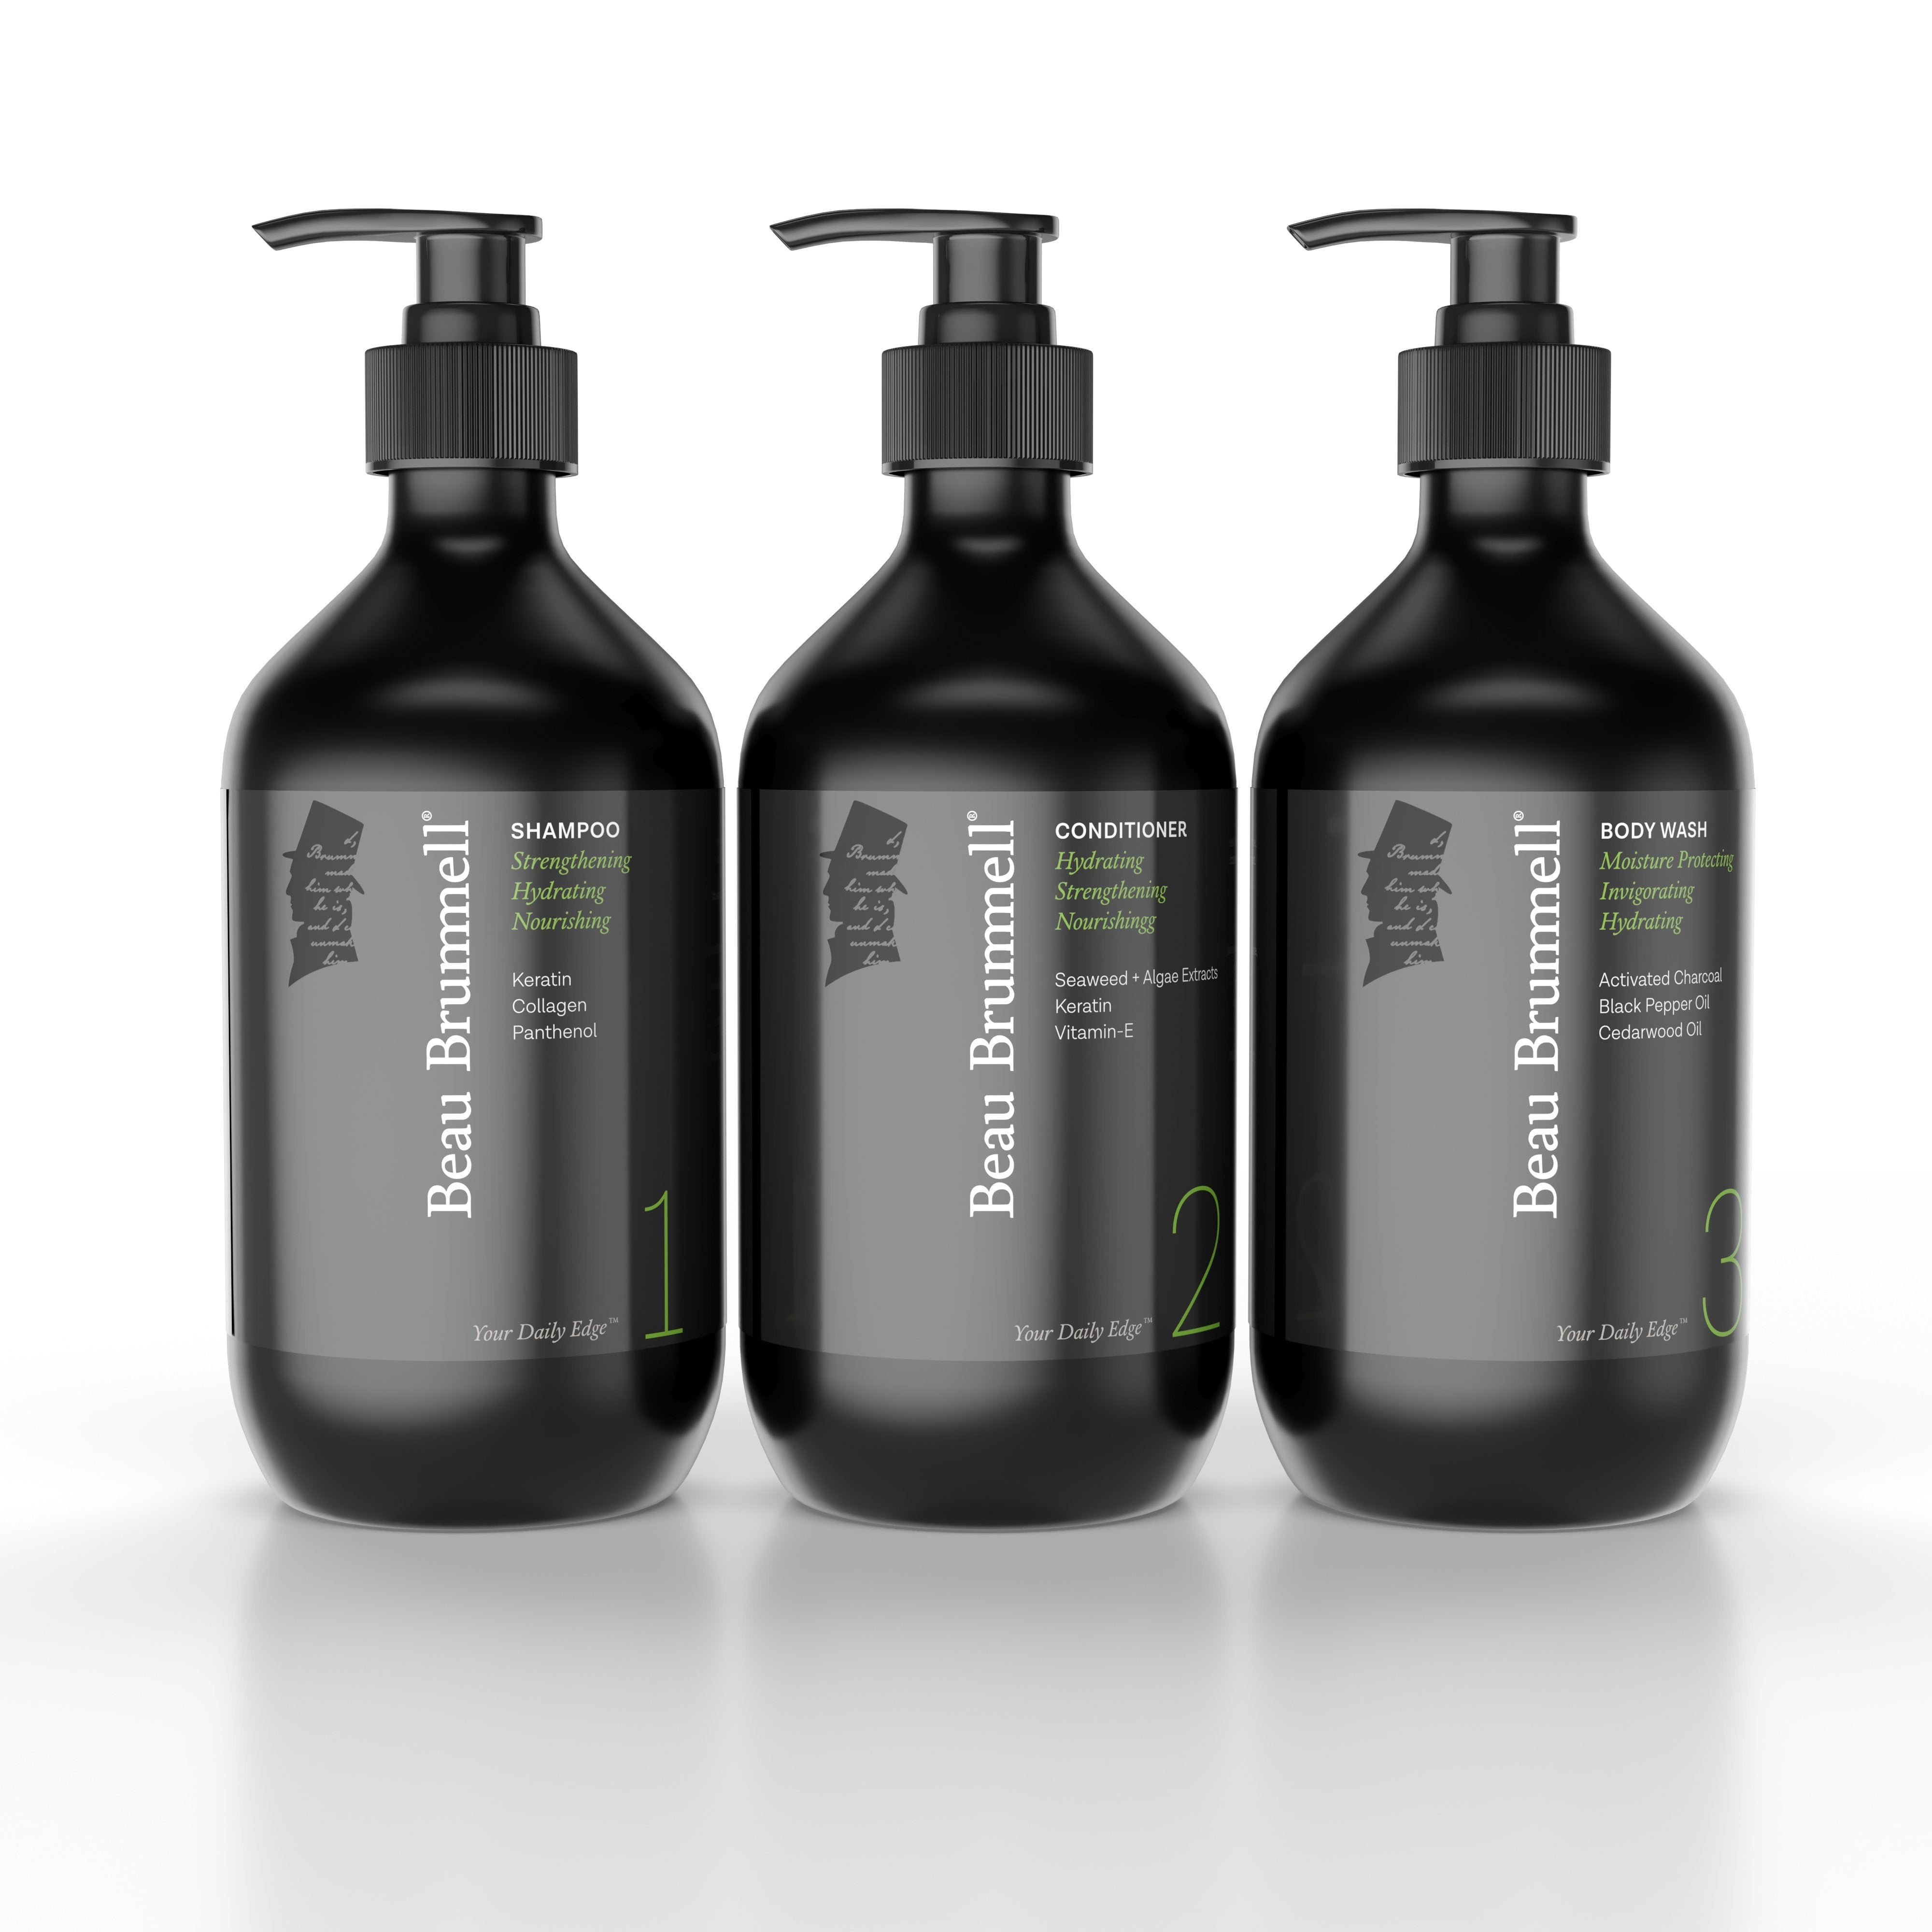 https://beaubrummellformen.com/cdn/shop/products/beau-brummell-for-men-shower-z-shower-essentials-set-13540592779399.jpg?v=1573746457